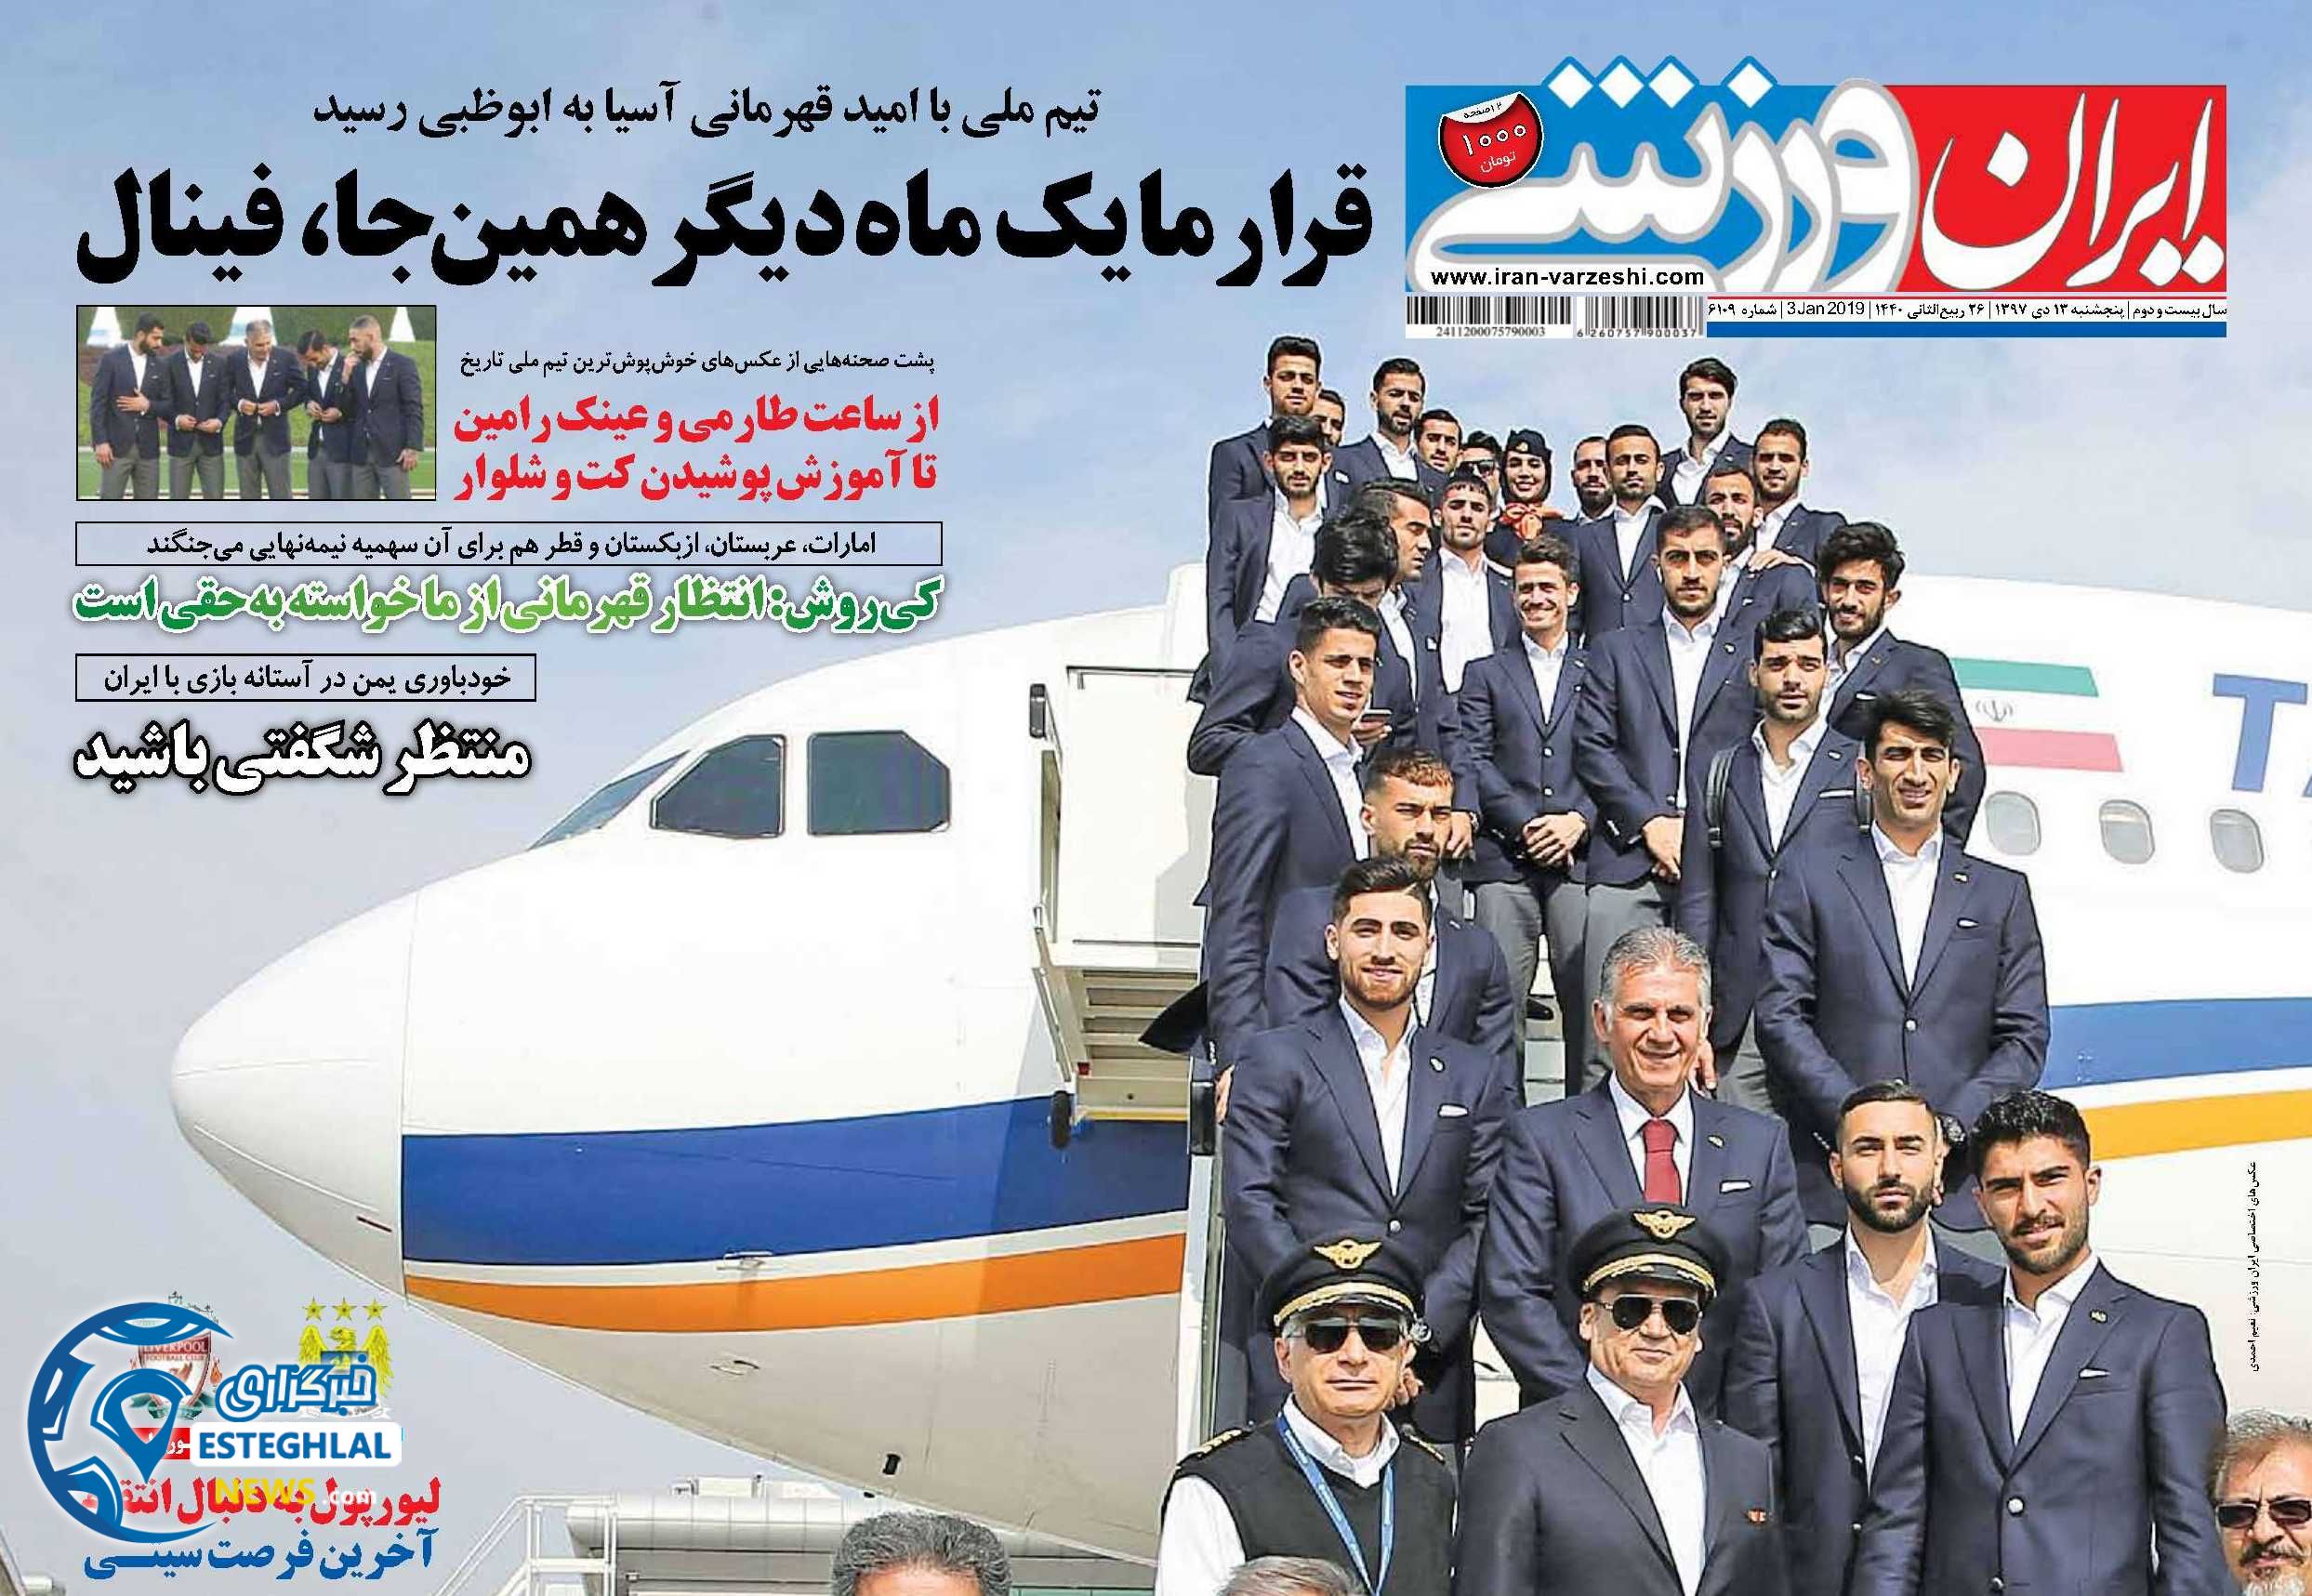 روزنامه ایران ورزشی پنجشنبه 13 دی 1397           